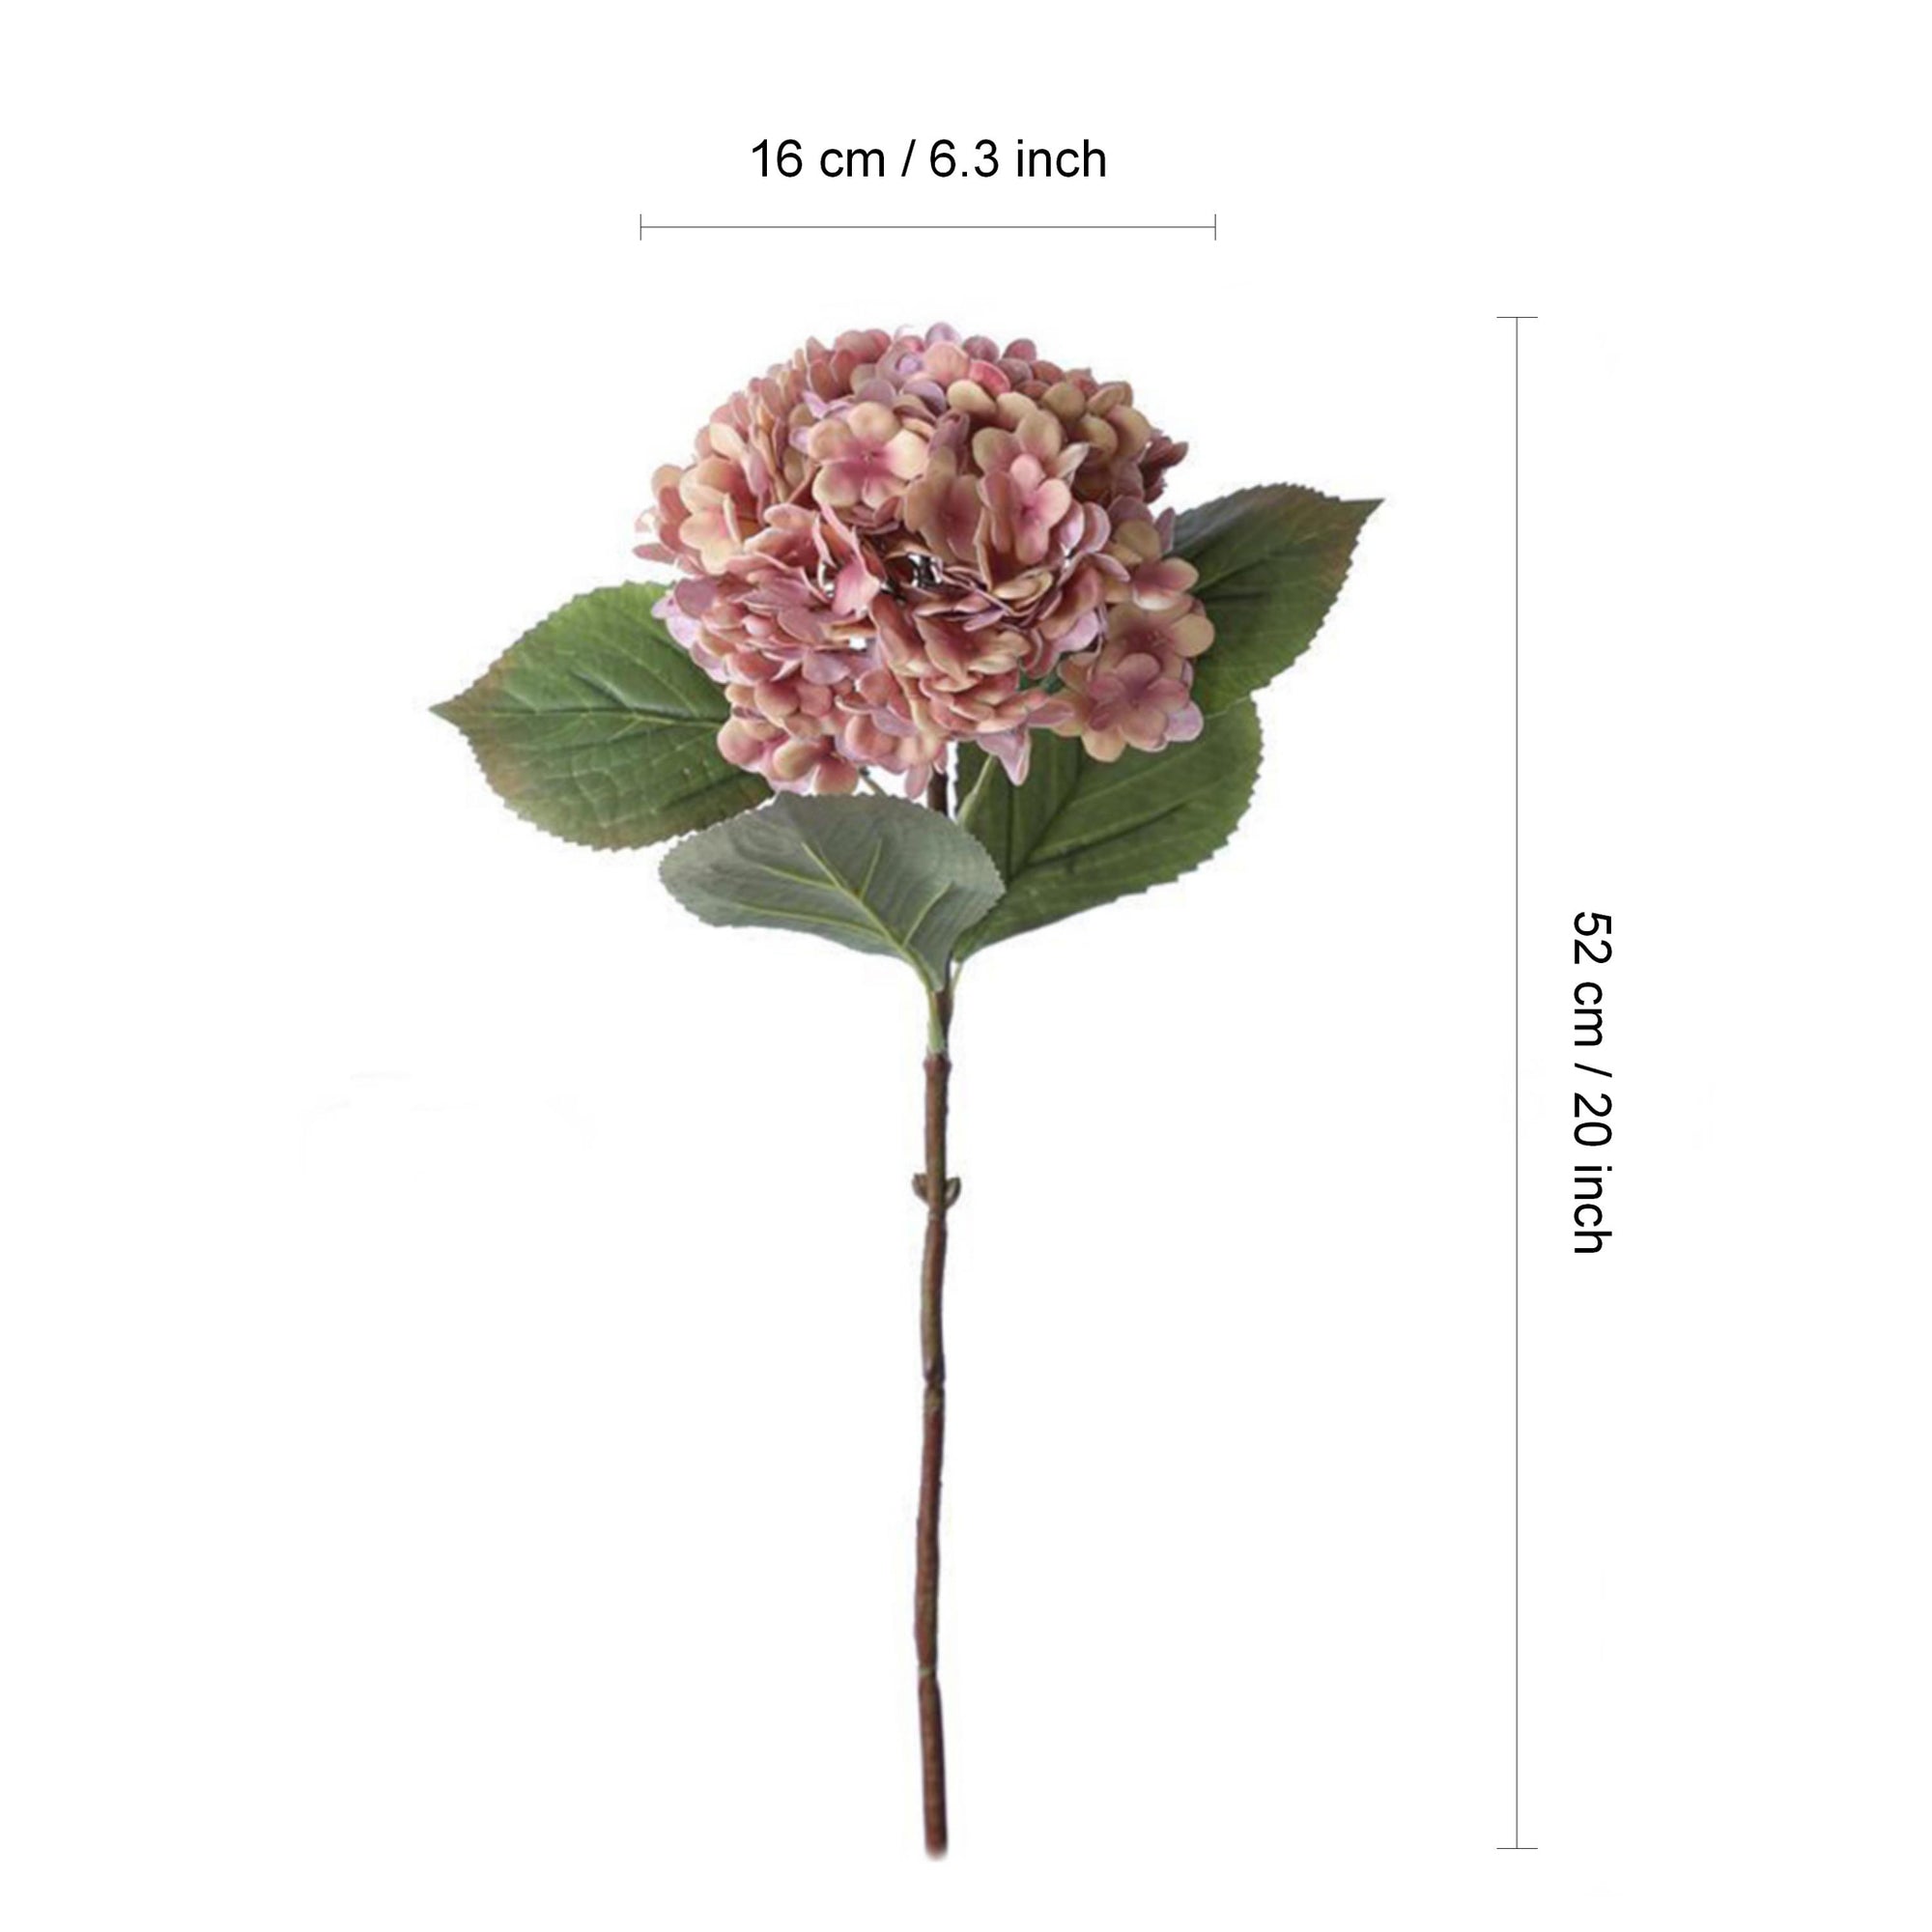 Realistic Hydrangea Flowers for Fall Wedding Decor